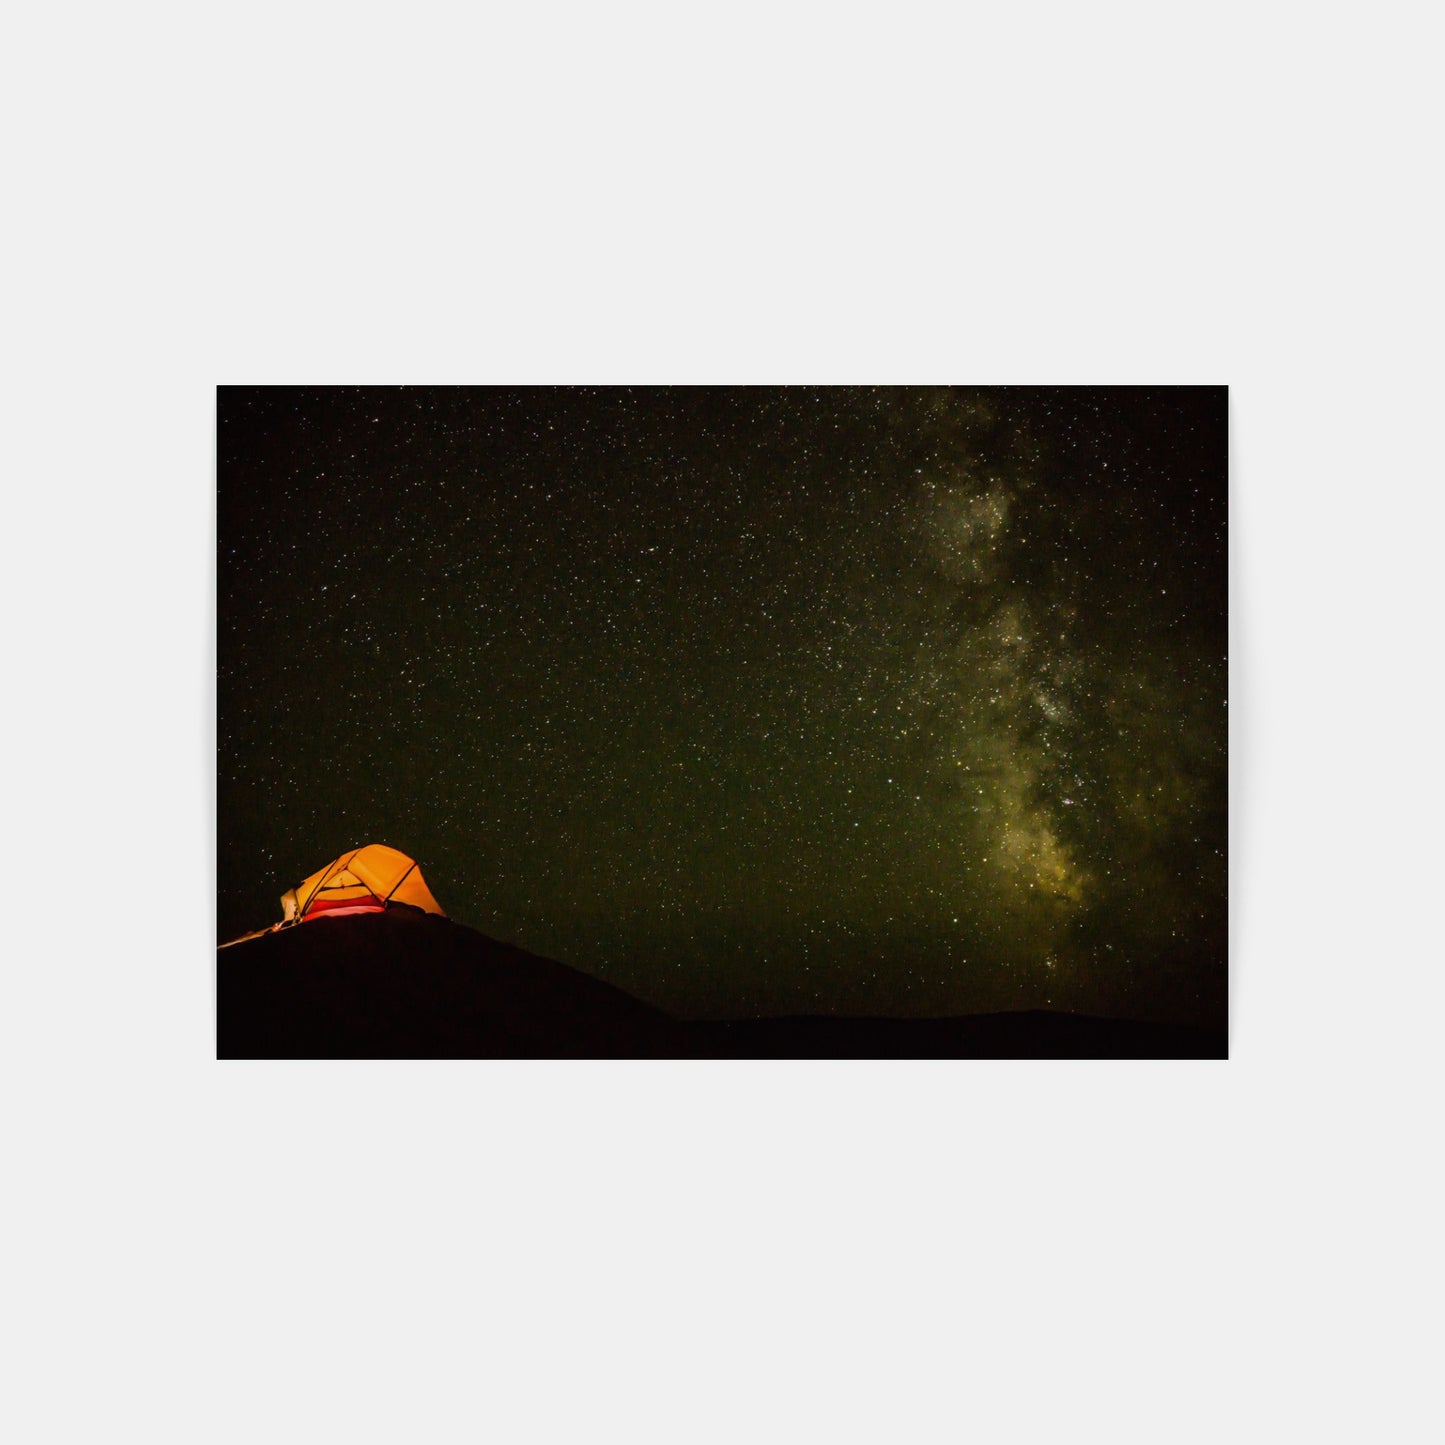 Noční poušť Gobi – Mongolsko